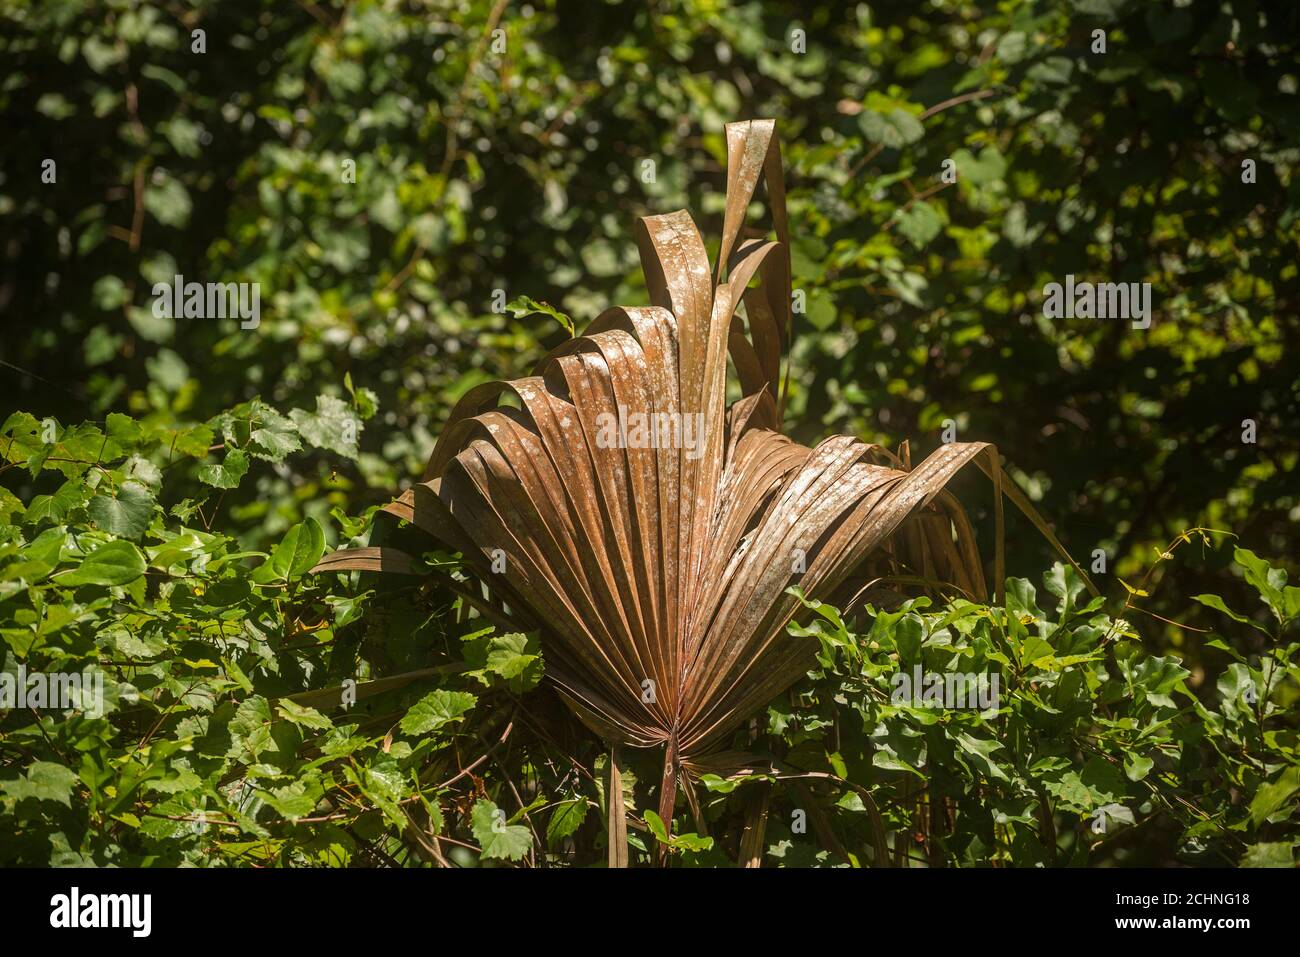 Il fronte dell'albero delle palme Sabal che è morto e caduto fuori dalla chiocciola dell'albero in una scena dei boschi della Florida centrale del nord. Foto Stock